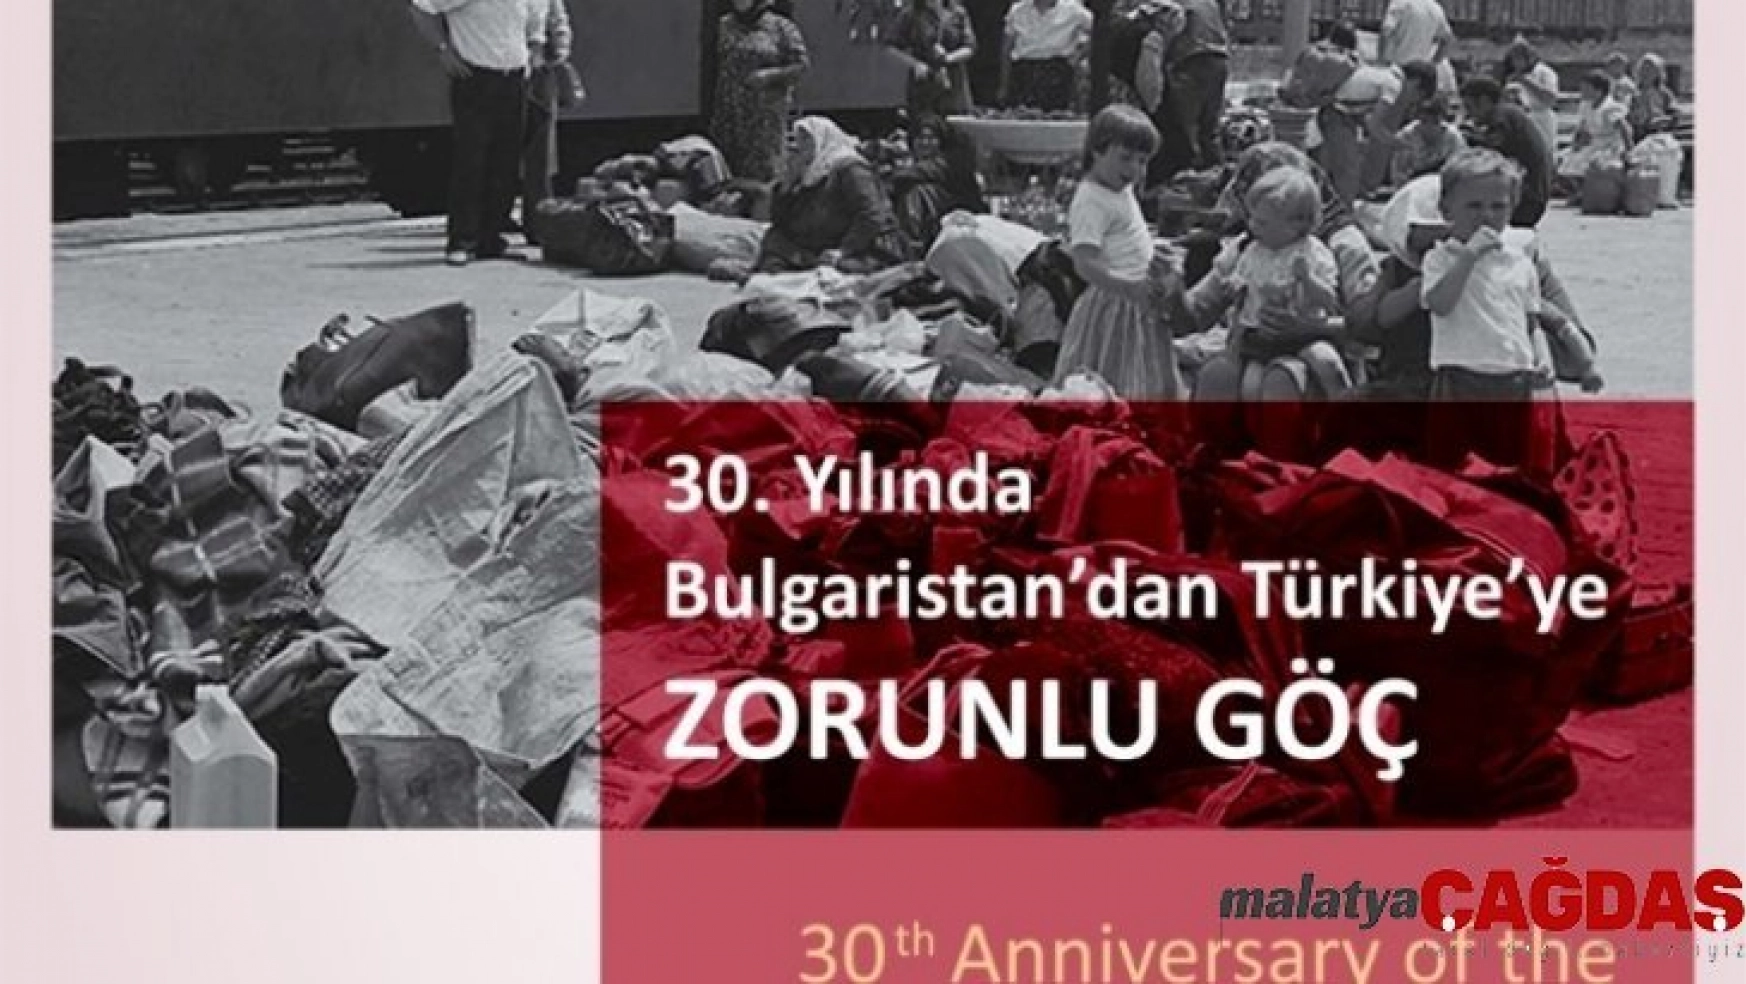 İzmir'de 'Bulgaristan'dan Türkiye'ye Zorunlu Göç Sempozyumu' düzenlenecek